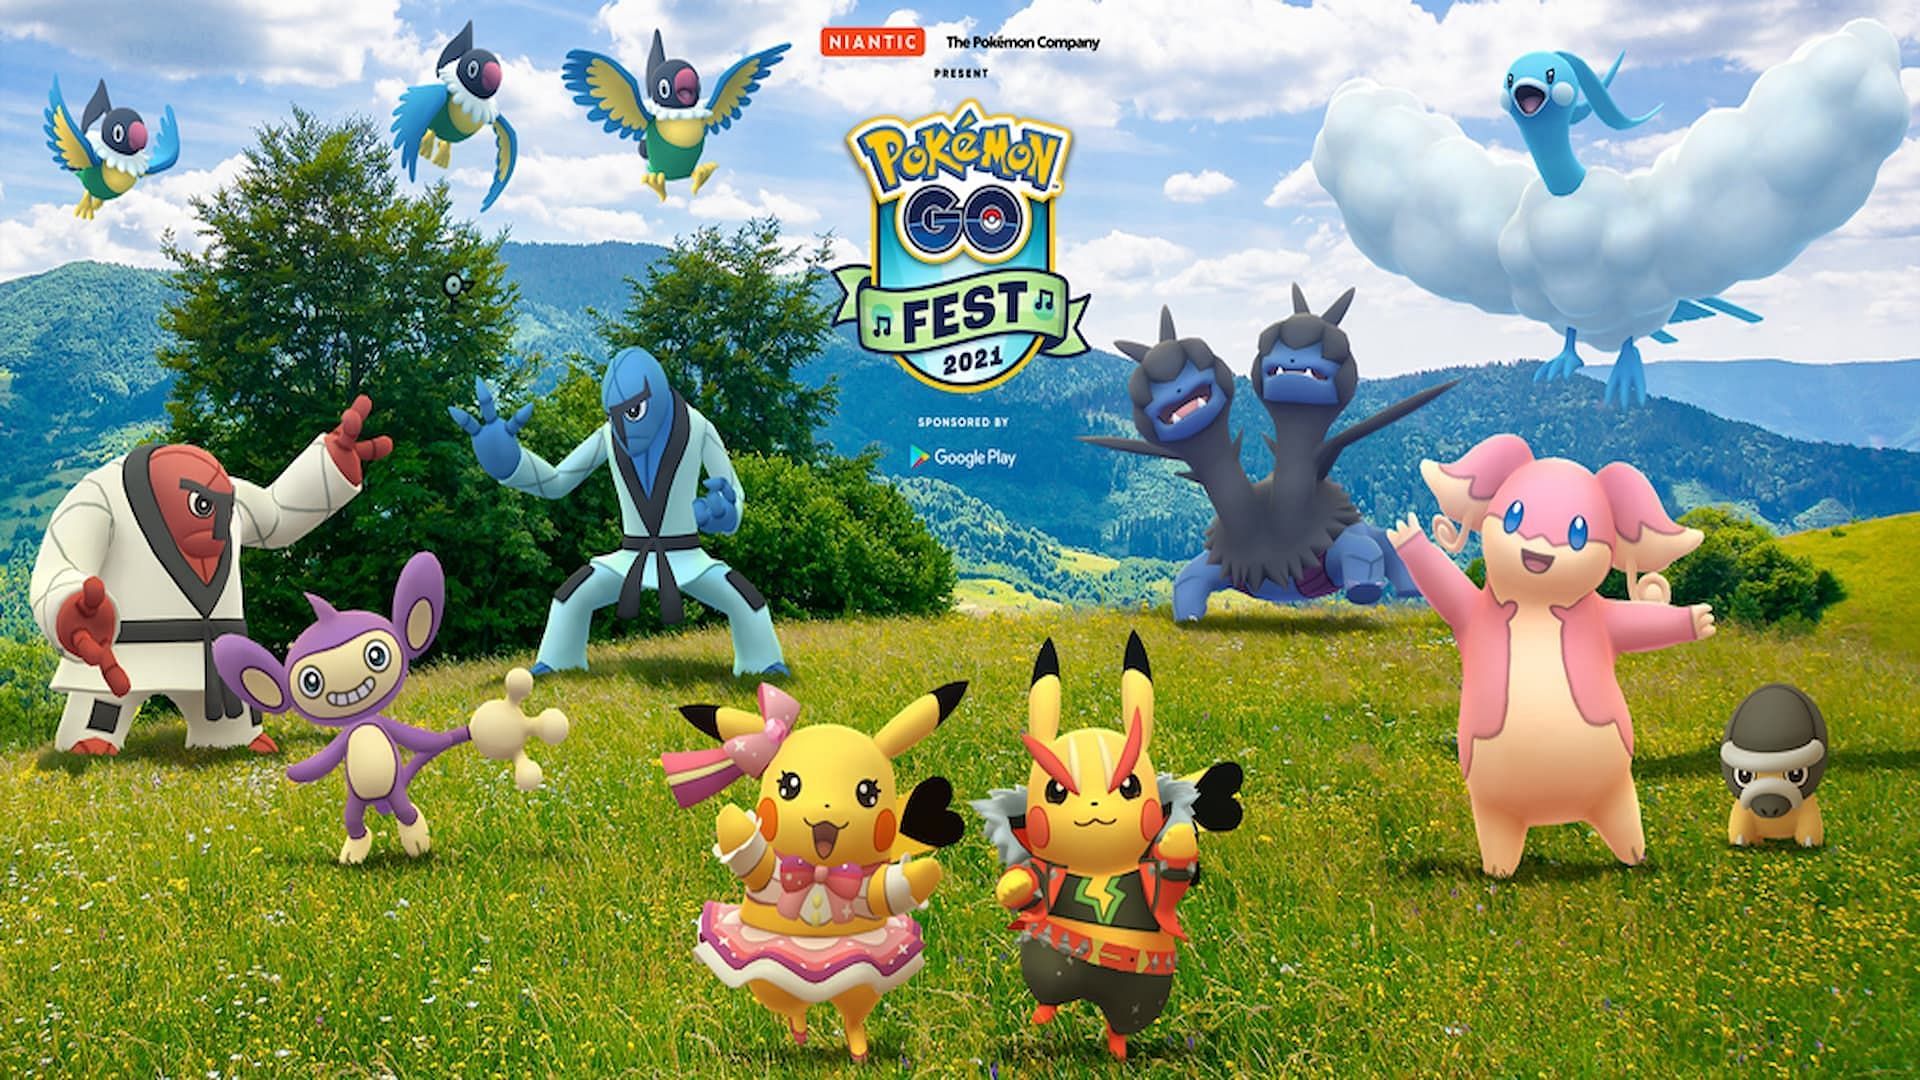 Official poster for Pokemon GO Fest 2021 (Image via Niantic)